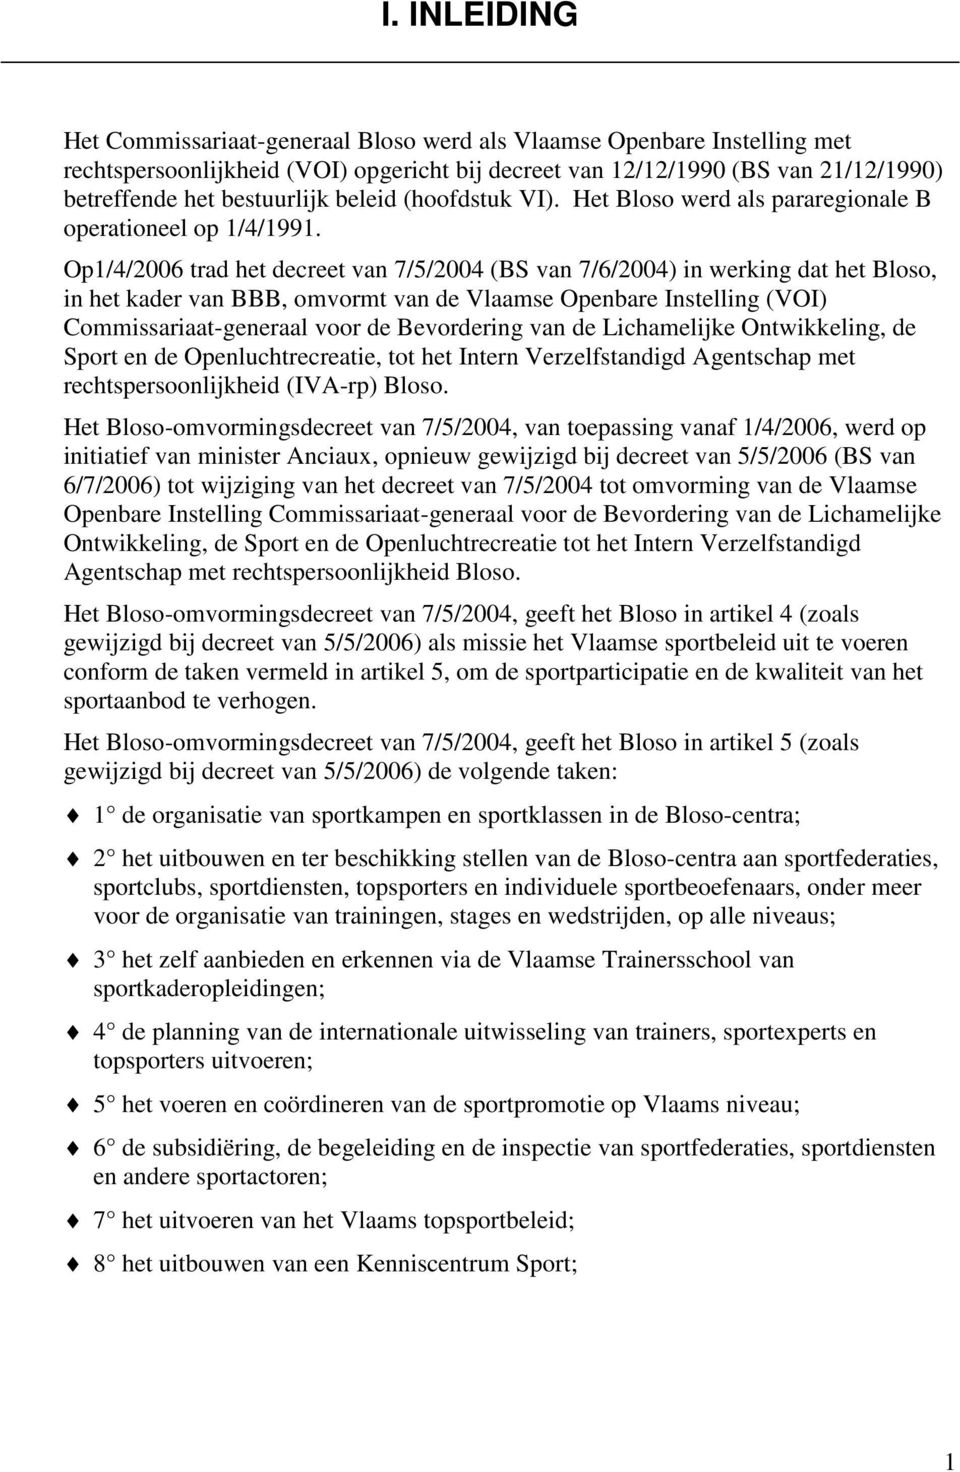 Op1/4/2006 trad het decreet van 7/5/2004 (BS van 7/6/2004) in werking dat het Bloso, in het kader van BBB, omvormt van de Vlaamse Openbare Instelling (VOI) Commissariaat-generaal voor de Bevordering